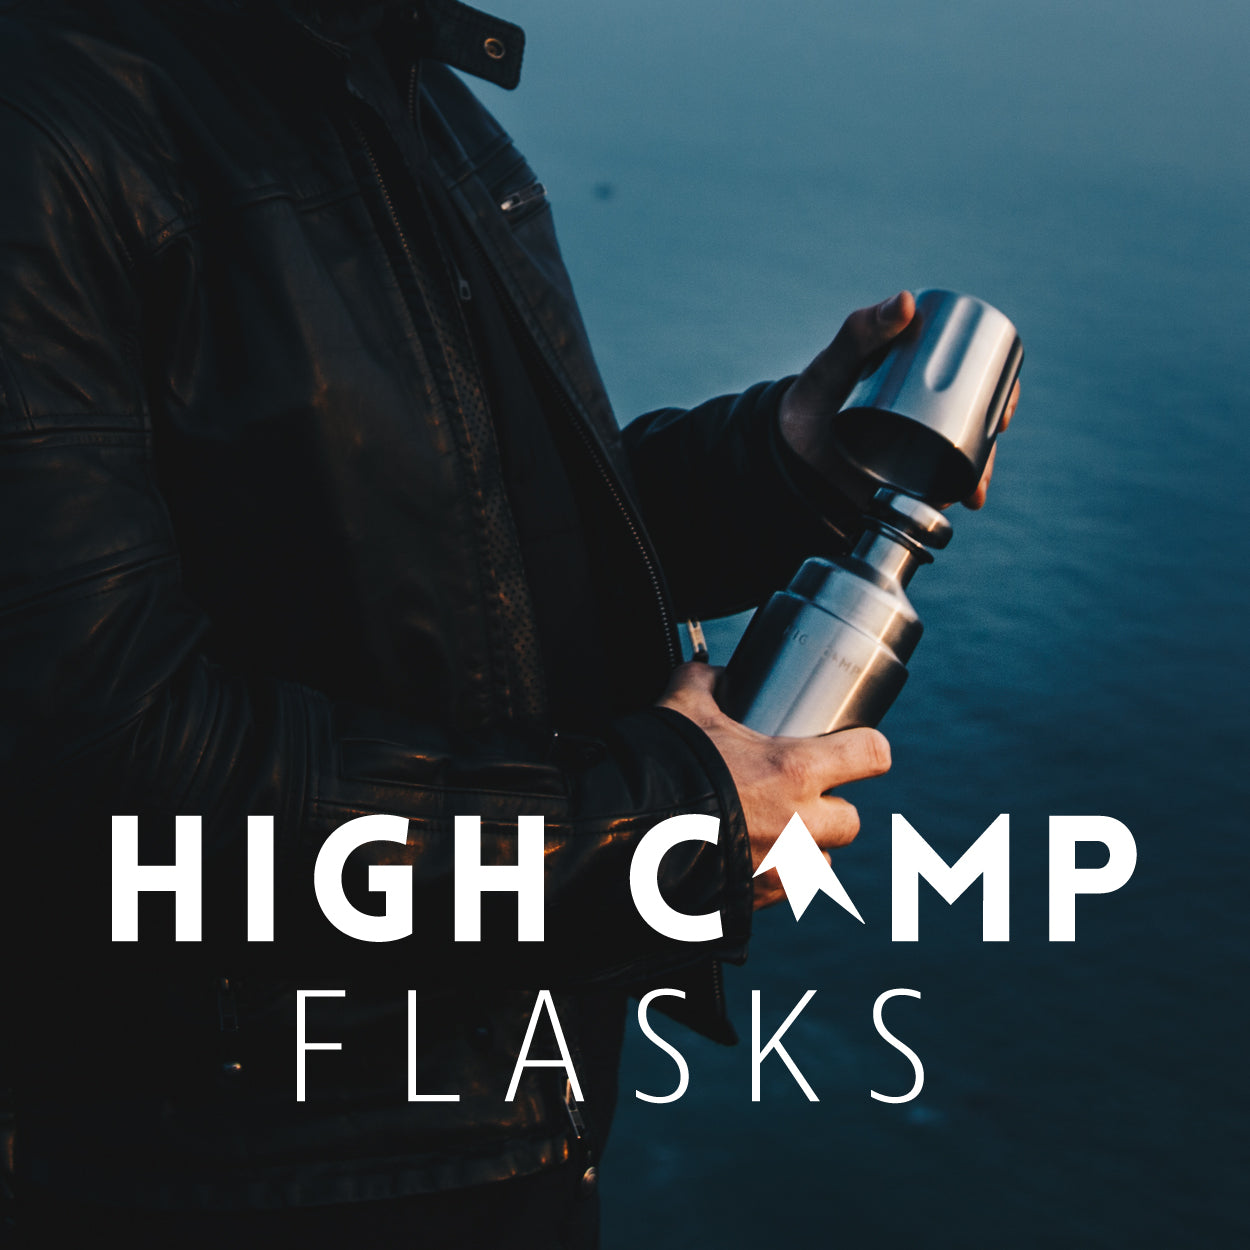 High Camp Flasks Digital Gift Card (Delivered via Email)